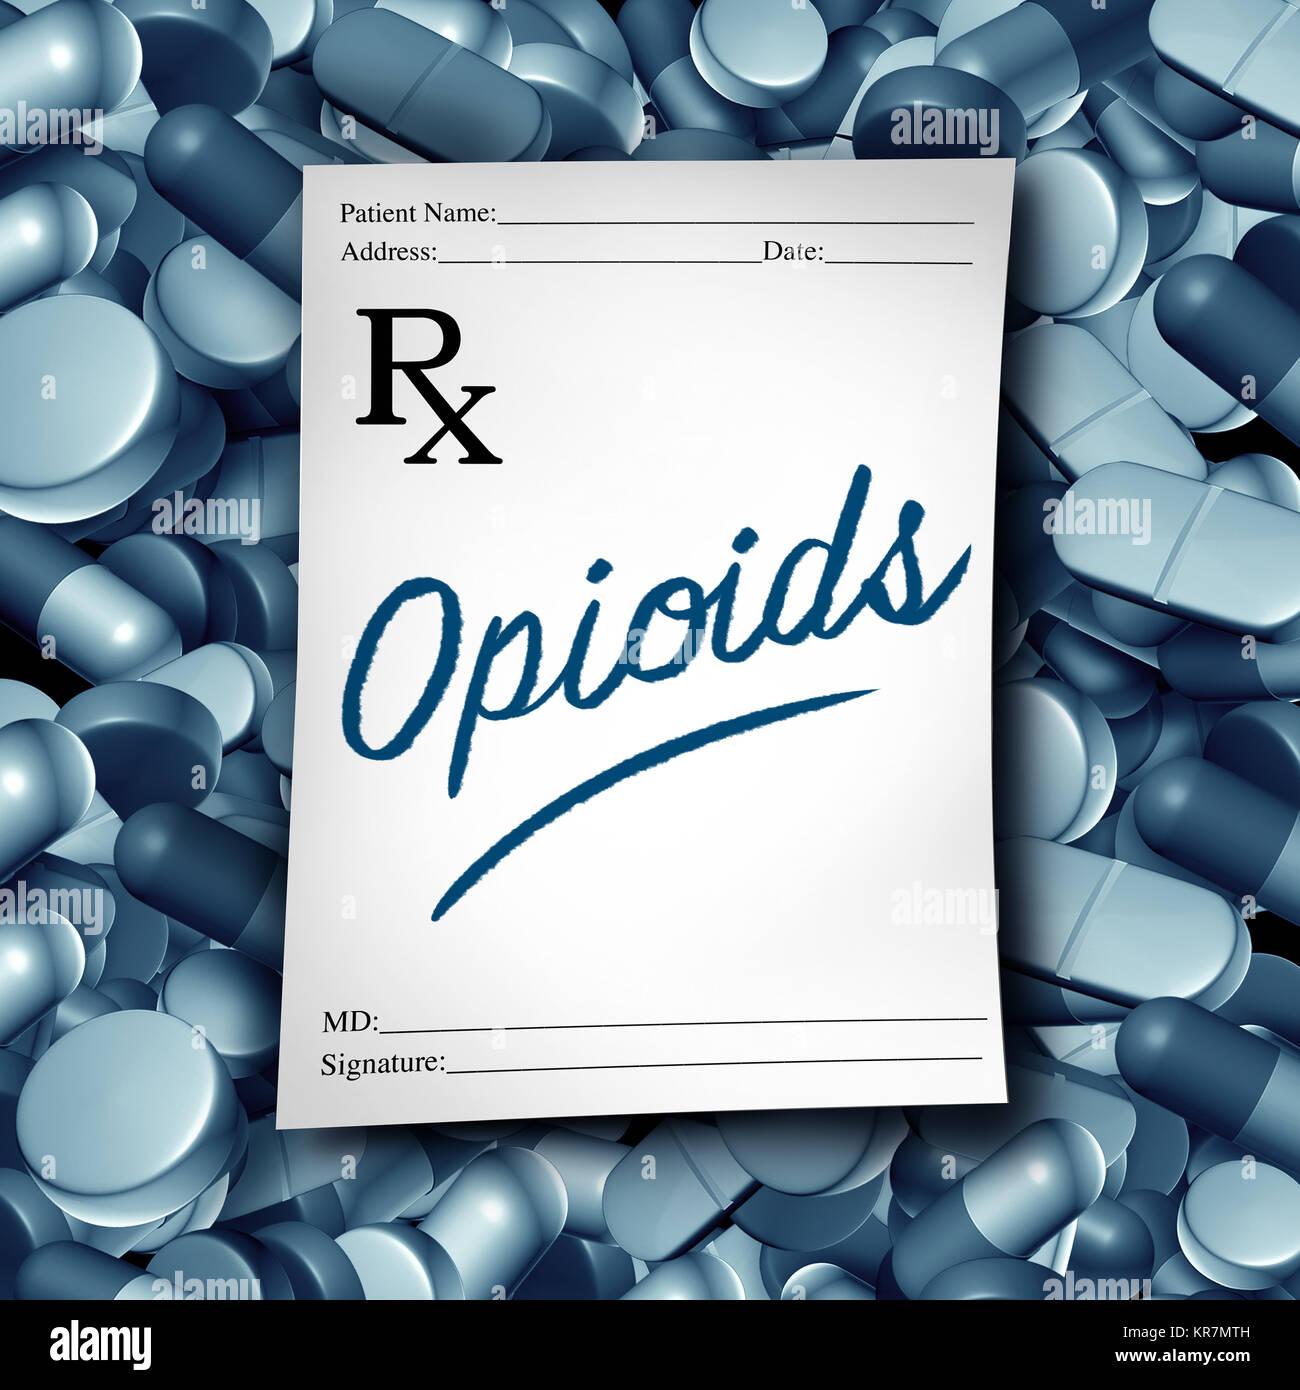 Opioide ärztliche Verschreibung und opioid Gesundheitsrisiko medizinische Pillen Krise als verordneten Medikamente Schmerzmittel sucht Epidemie Konzept. Stockfoto